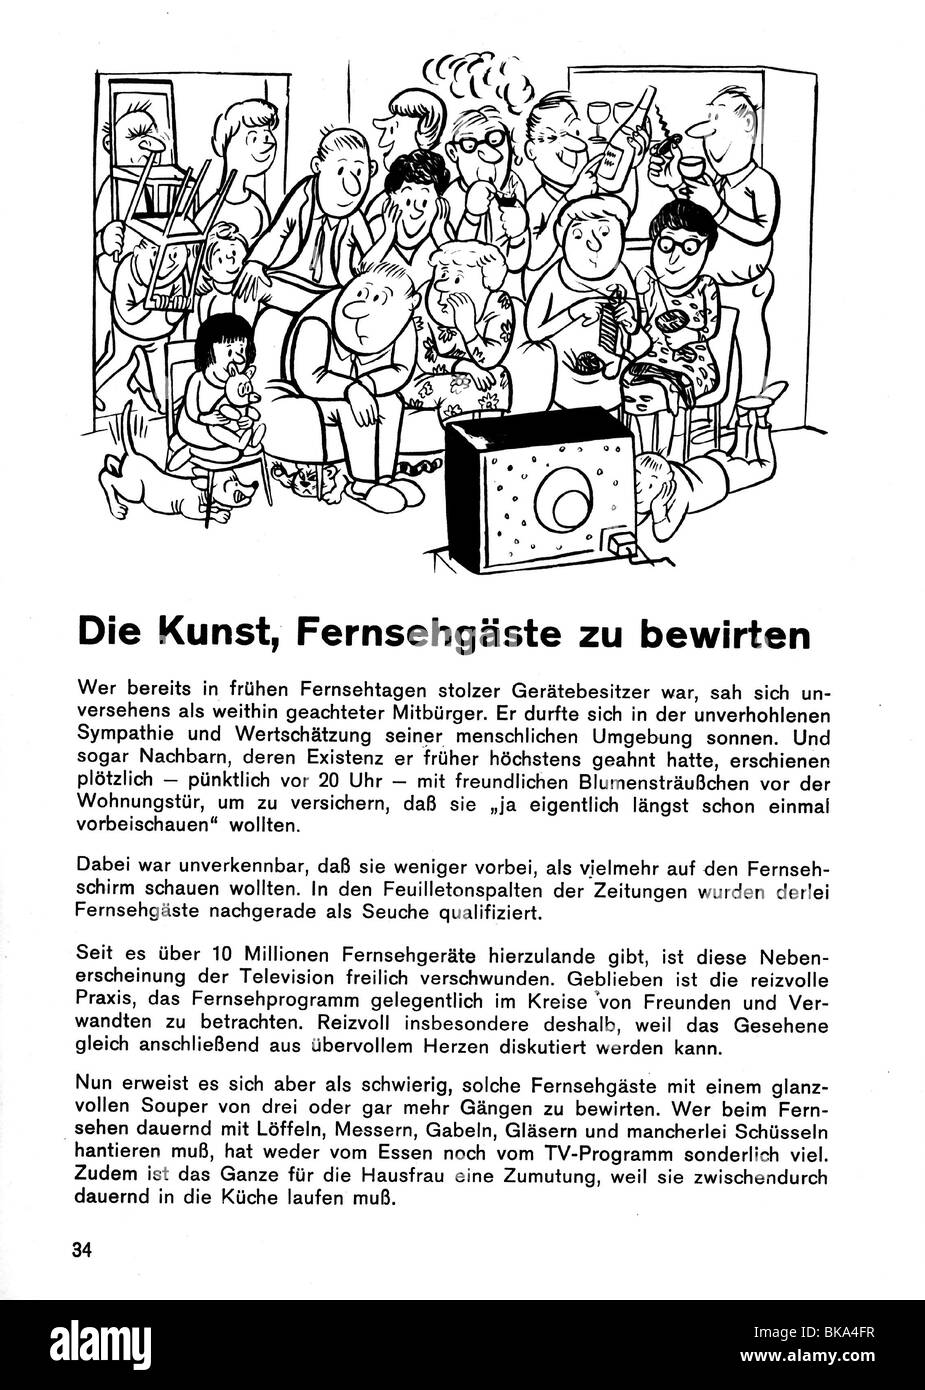 broadcast, television, advertising, Graetz brochure 'Die Kunst Fernsehgäste zu bewirten', W.M. Weber collection, Munich, , Stock Photo